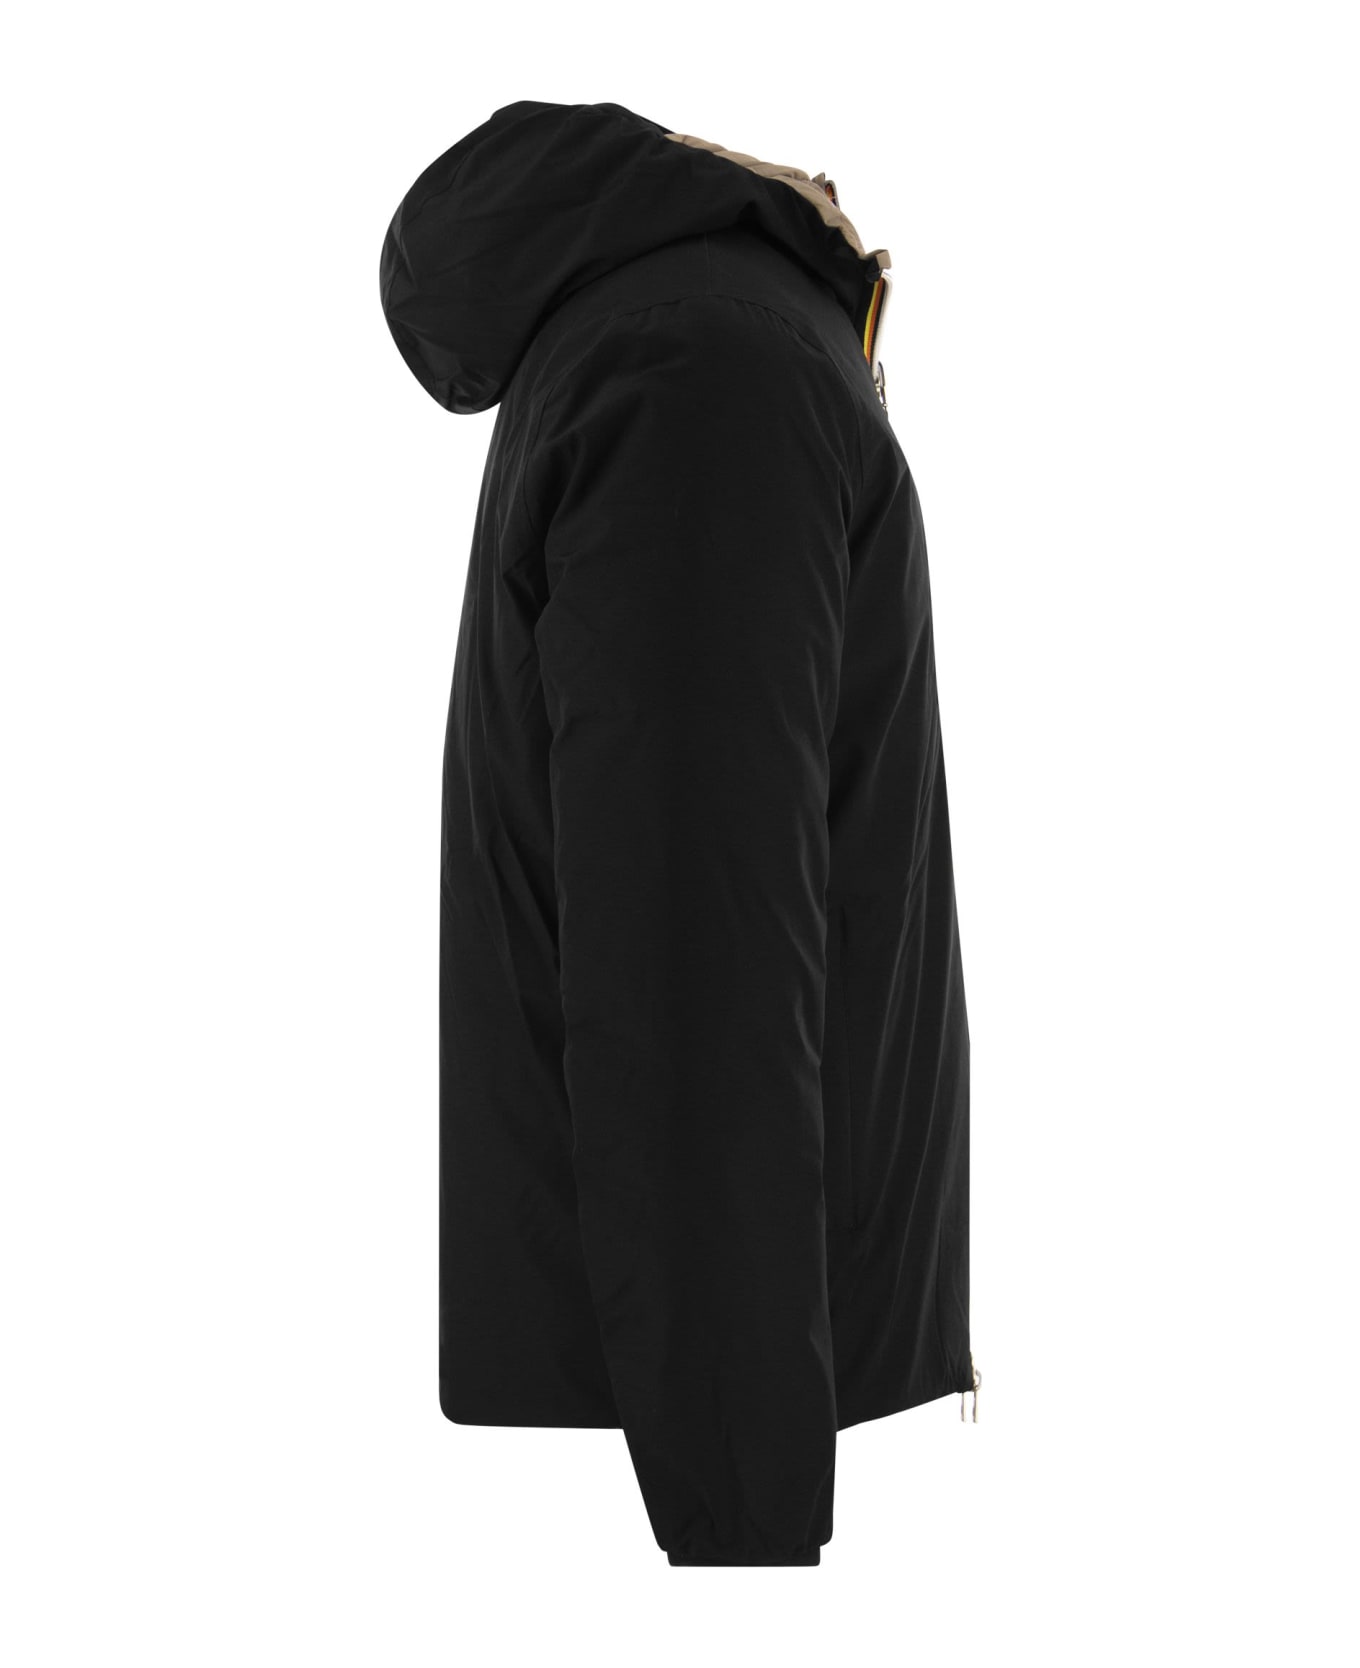 K-Way Jack - Reversible Hooded Down Jacket Jacket - BLACK/BEIGE